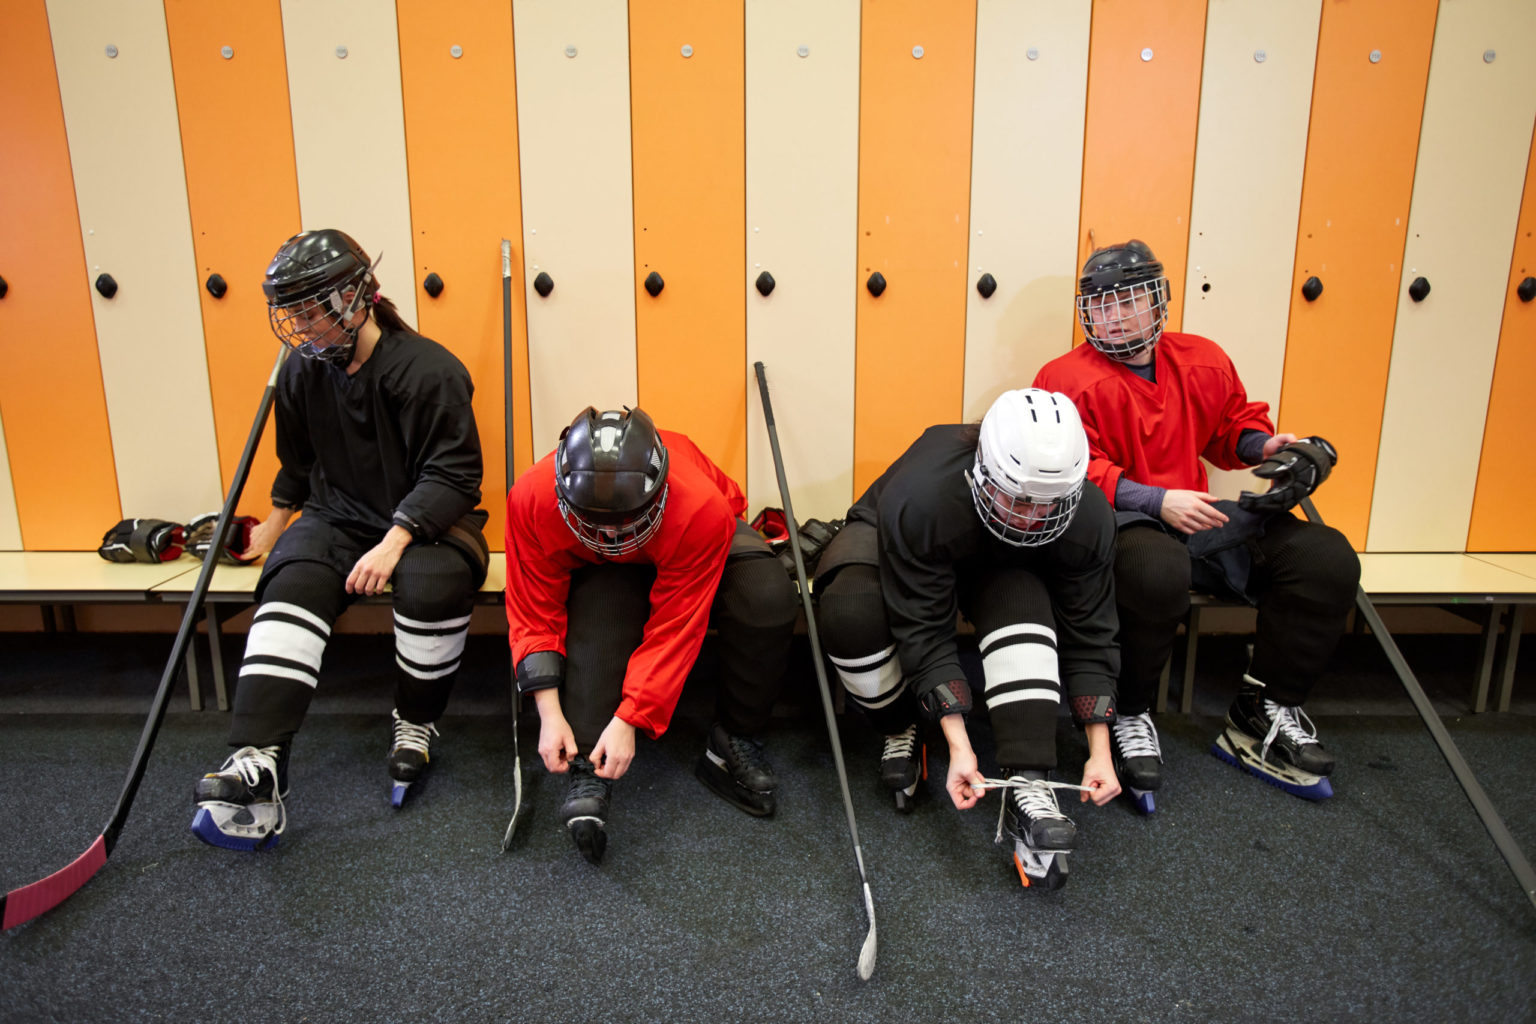 Hockey Team Getting Ready